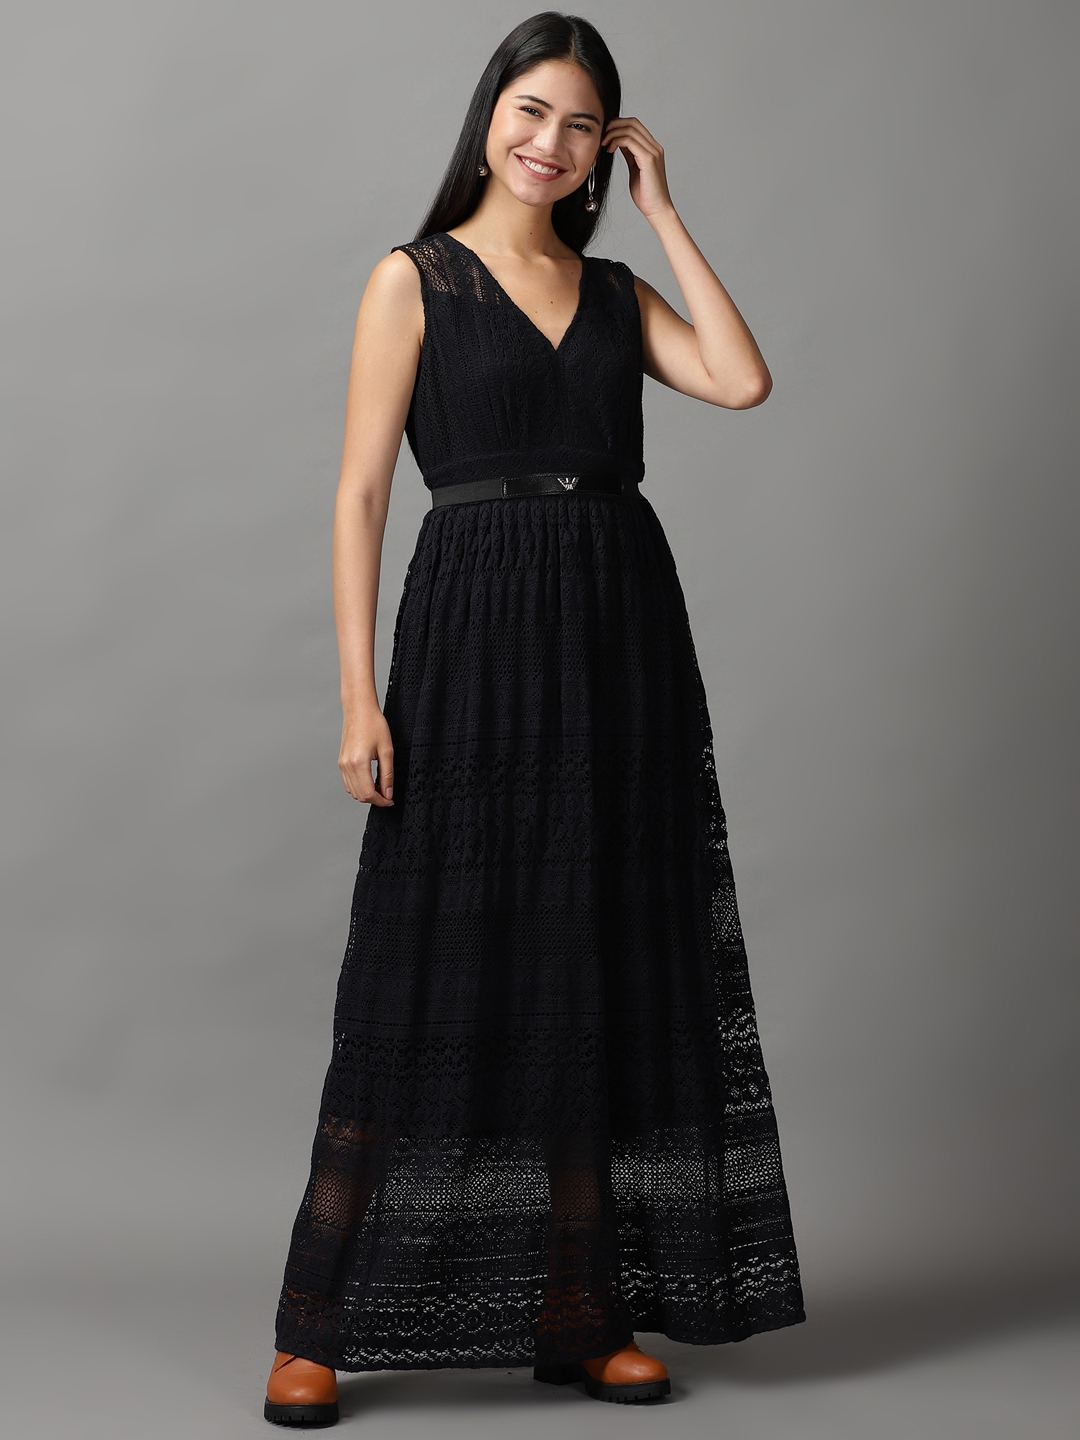 Women's Black Cotton Solid Dresses